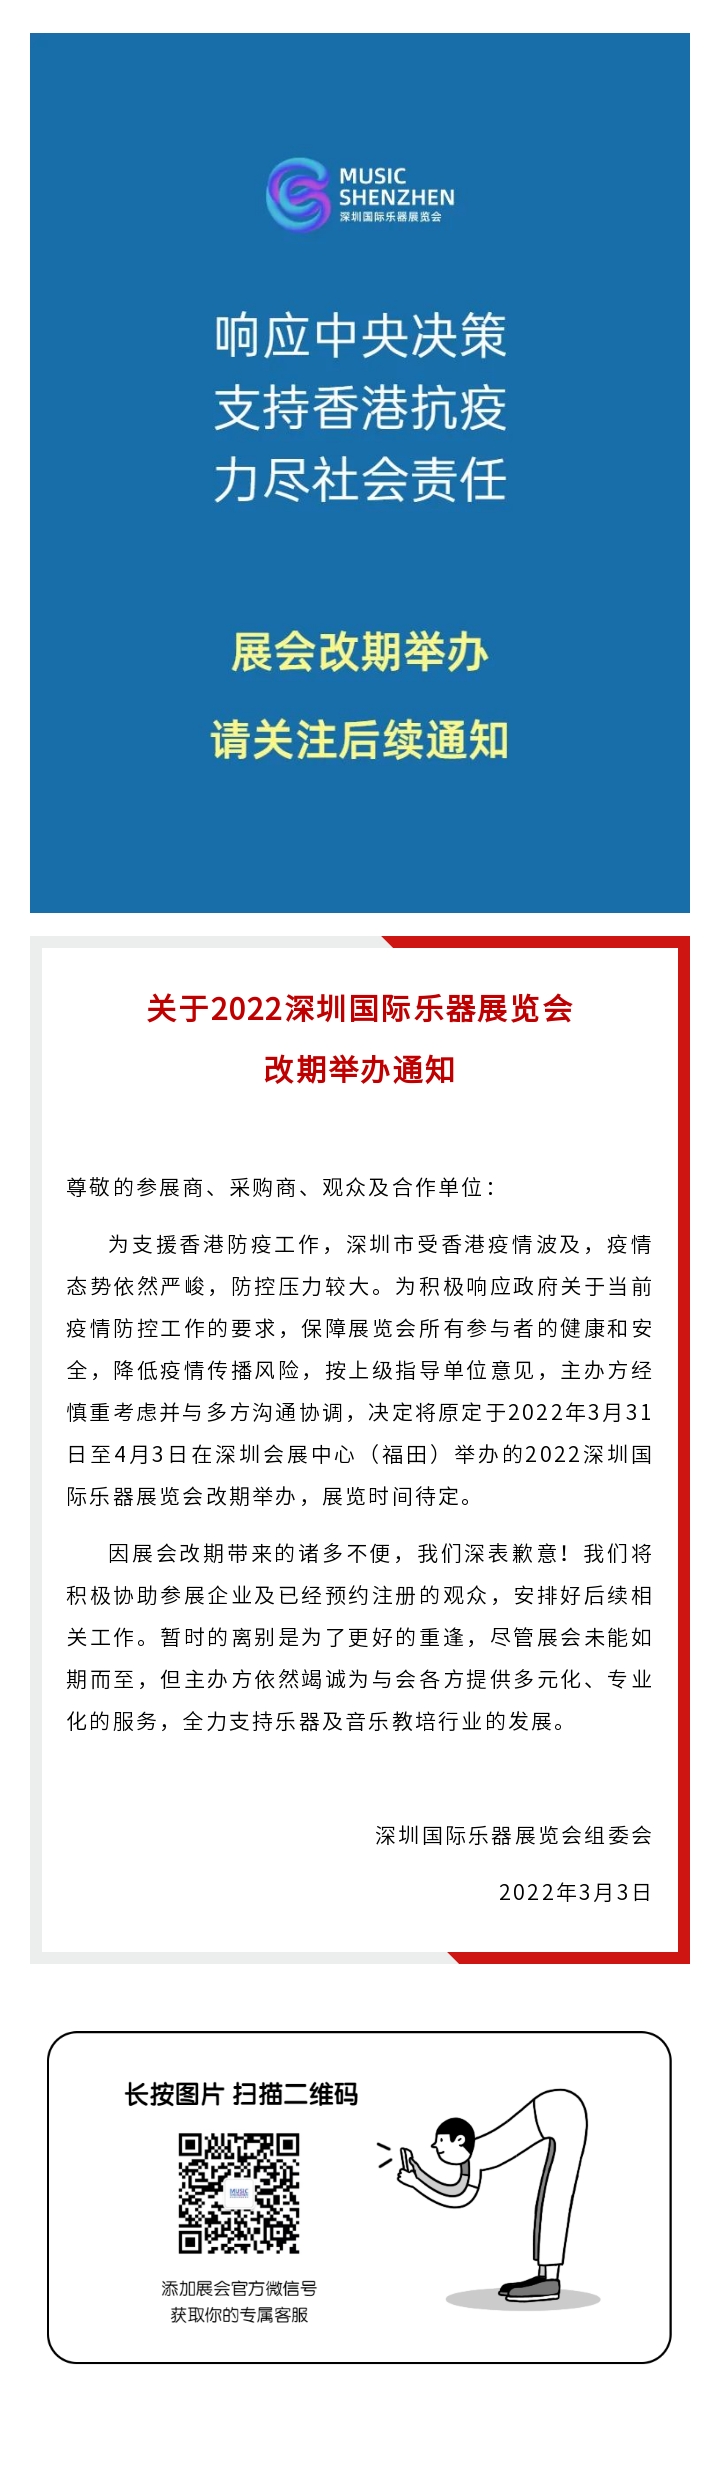 2022深圳国际乐器展览会改期举办通知